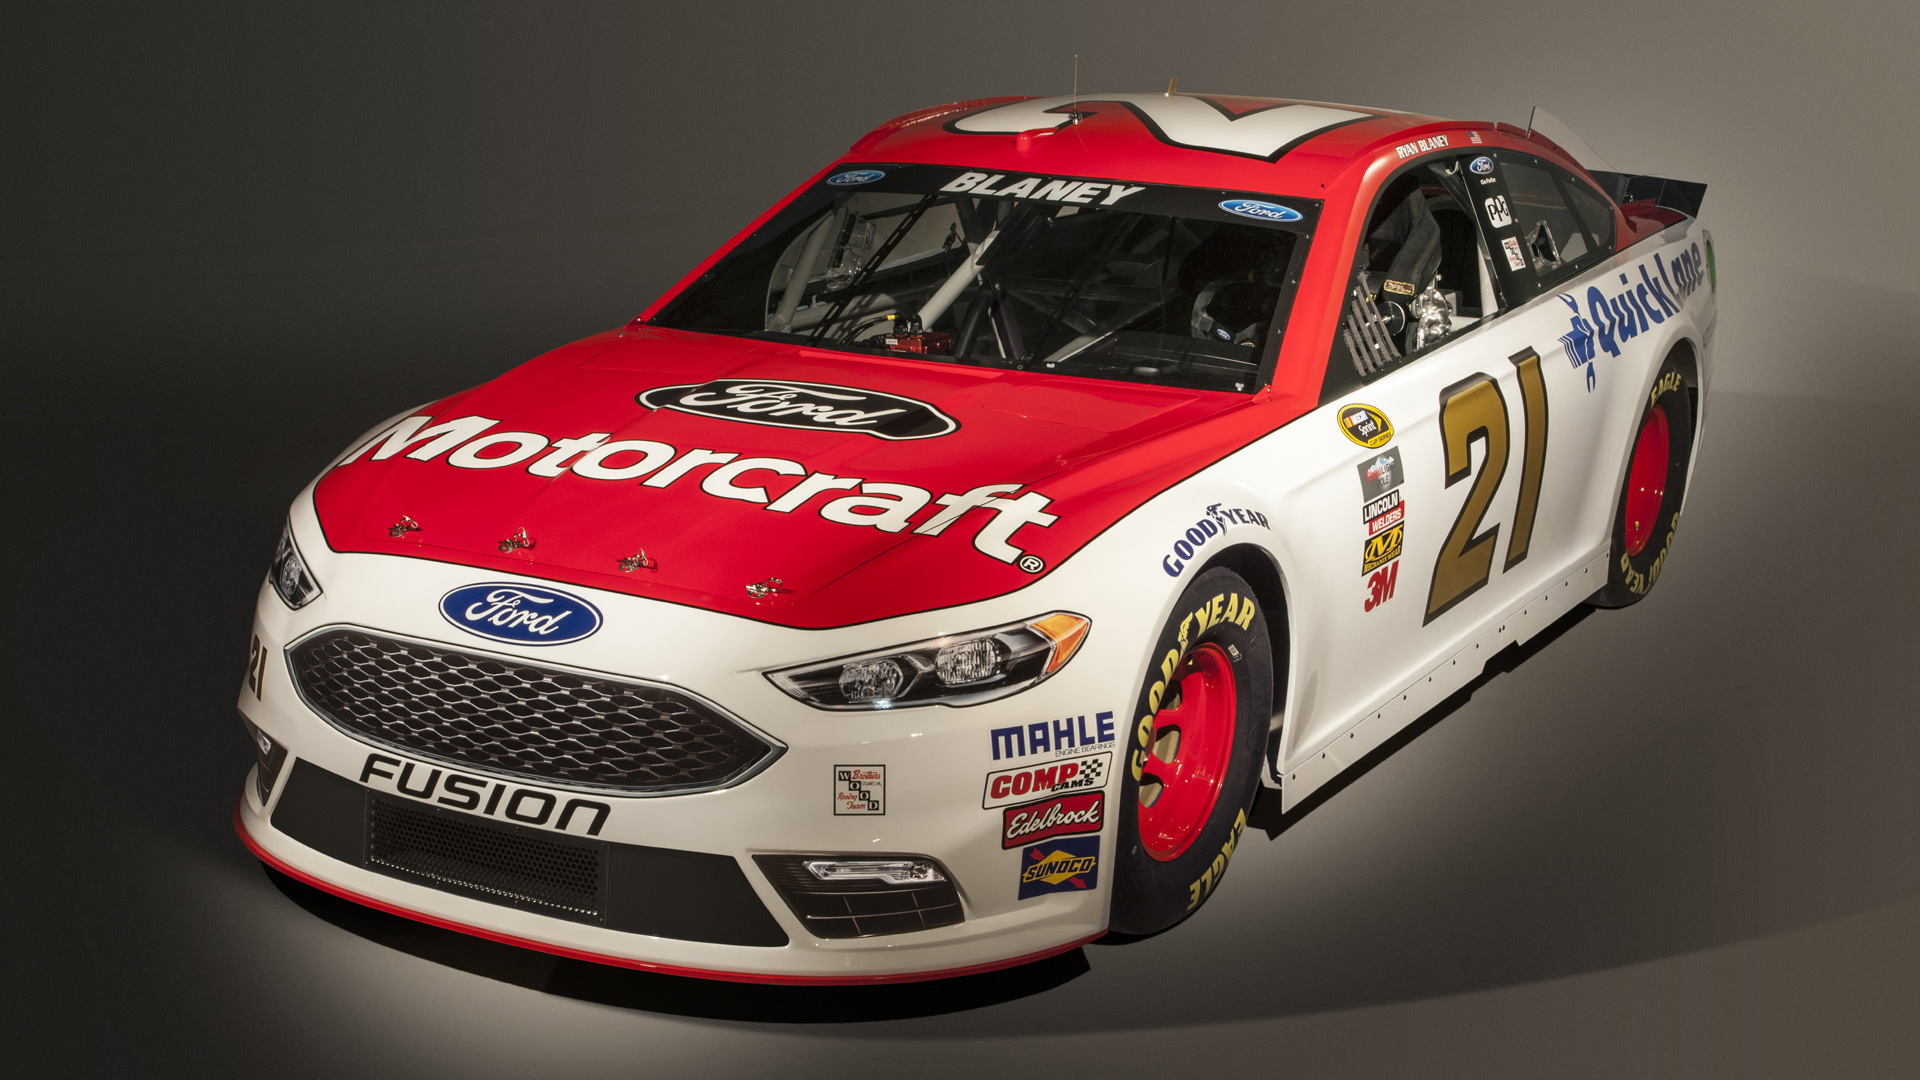 2016 Ford Fusion NASCAR Sprint Cup race car